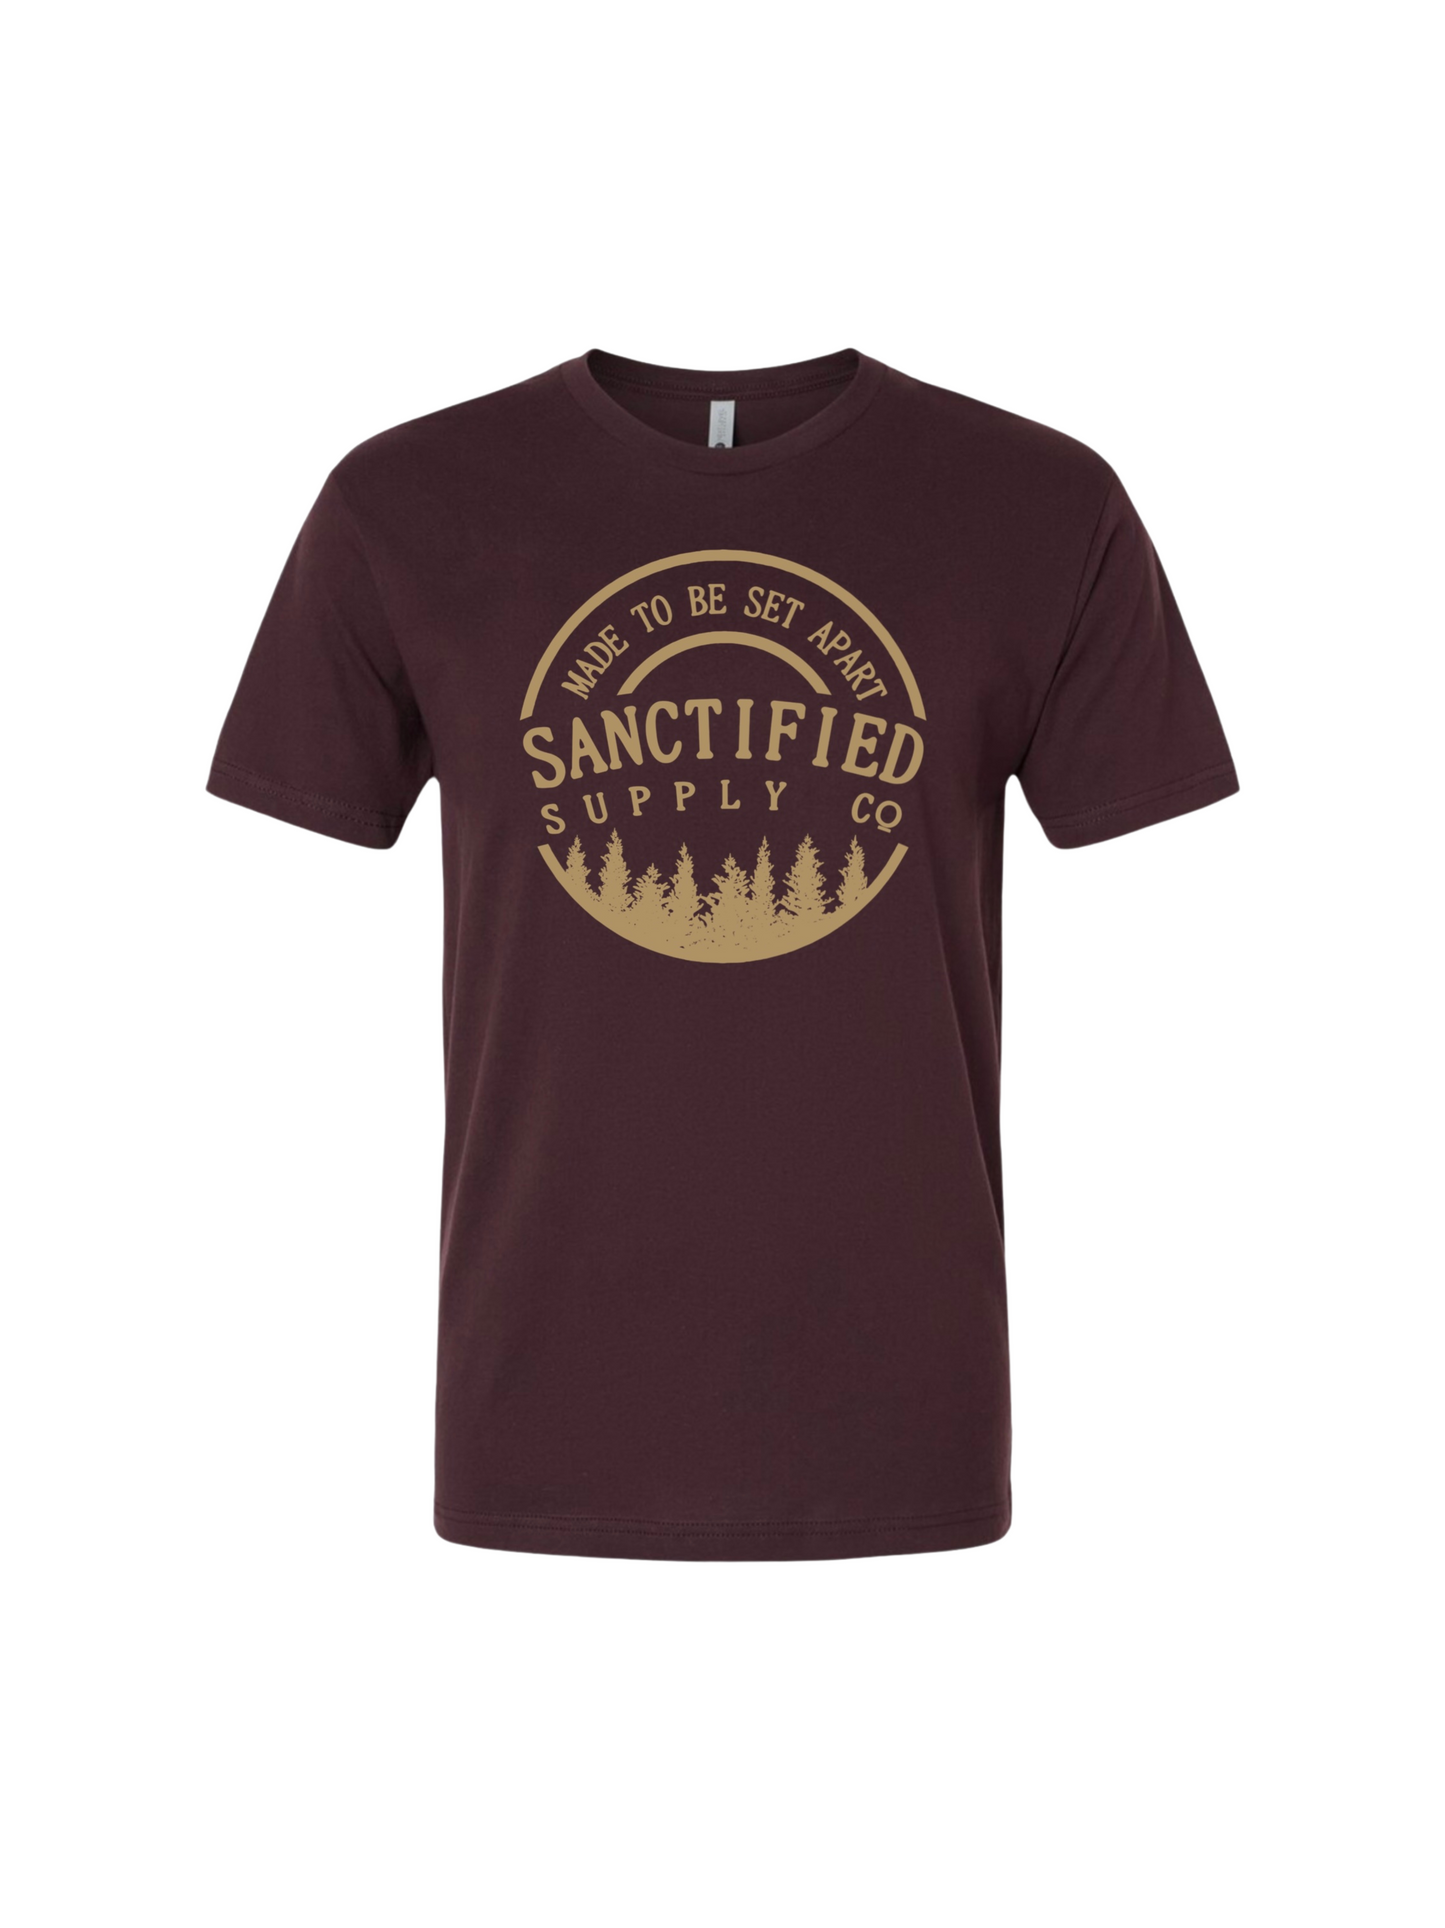 Sanctified T-Shirt